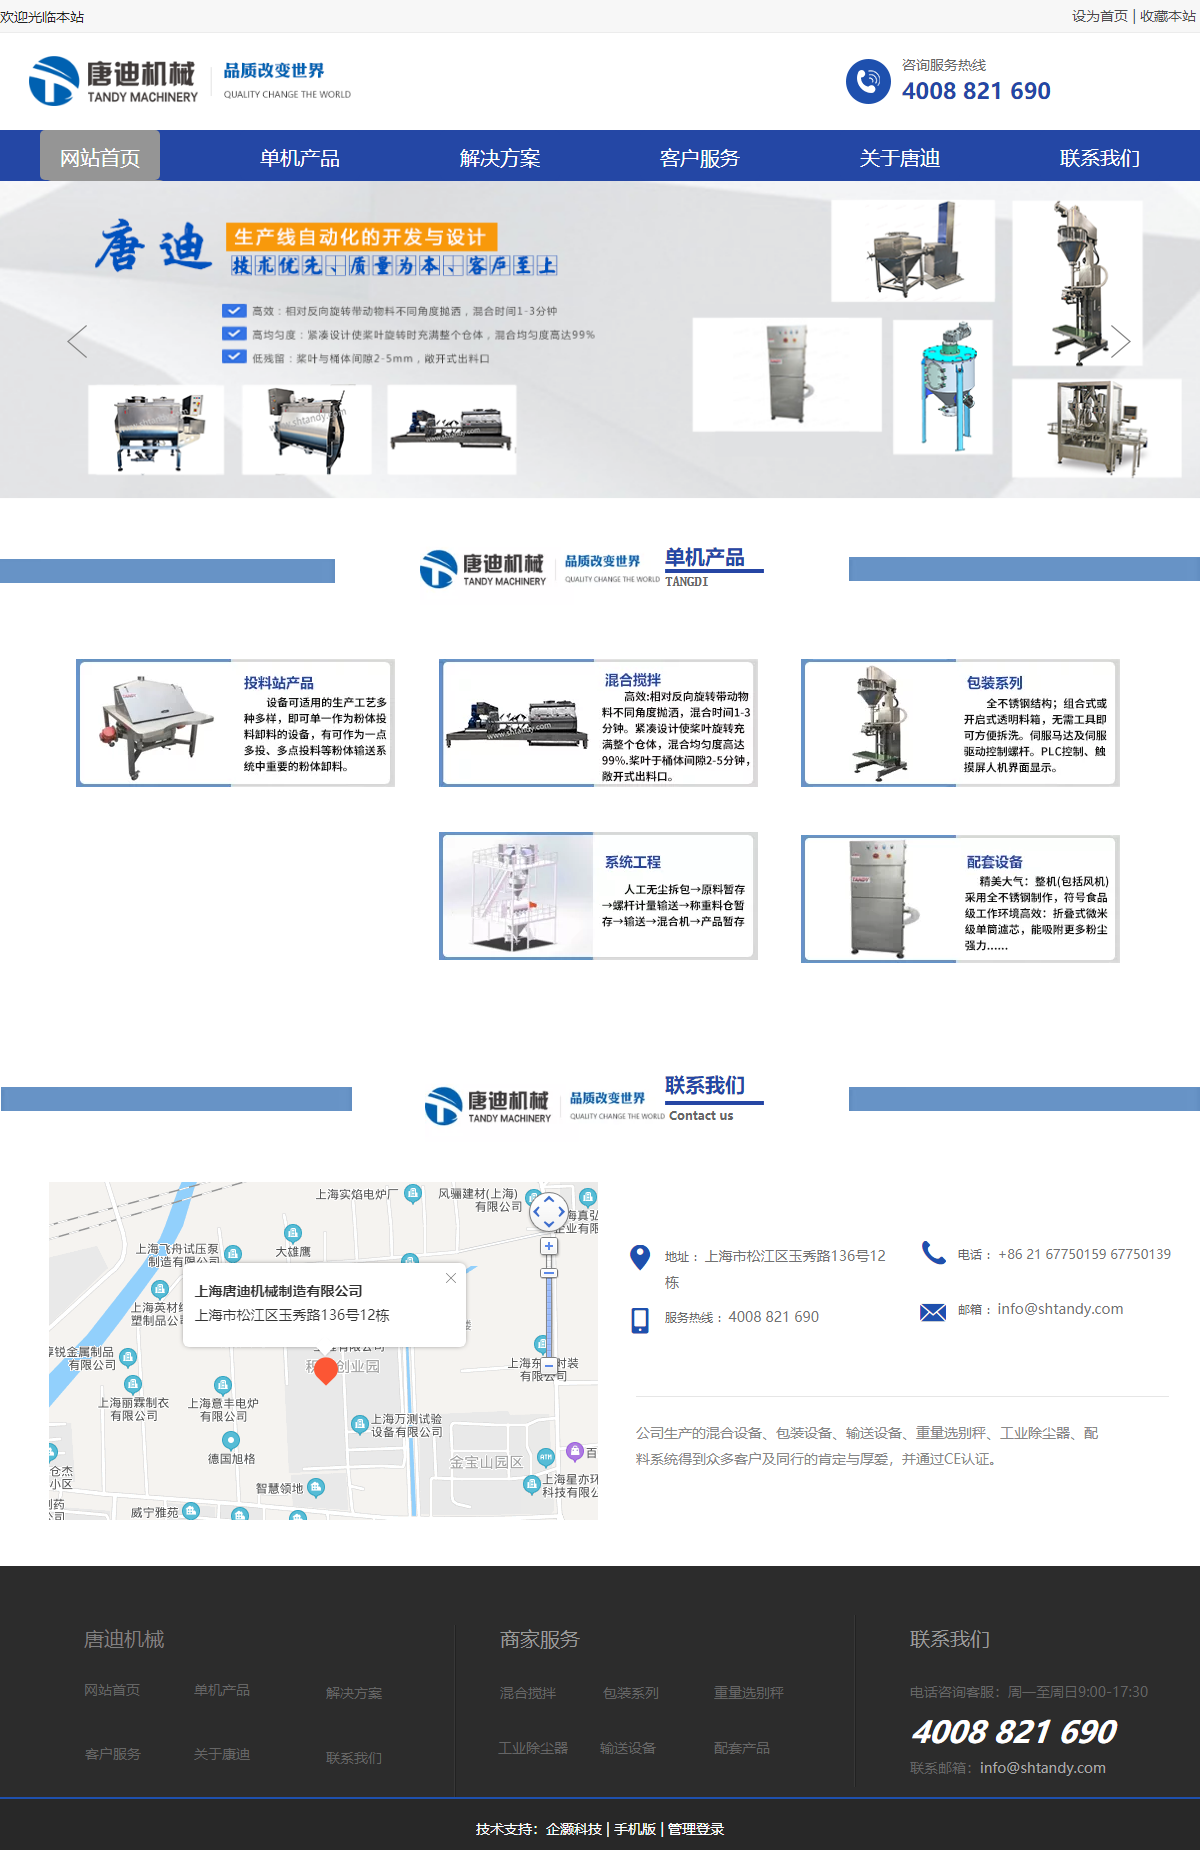 上海唐迪机械制造有限公司网站案例